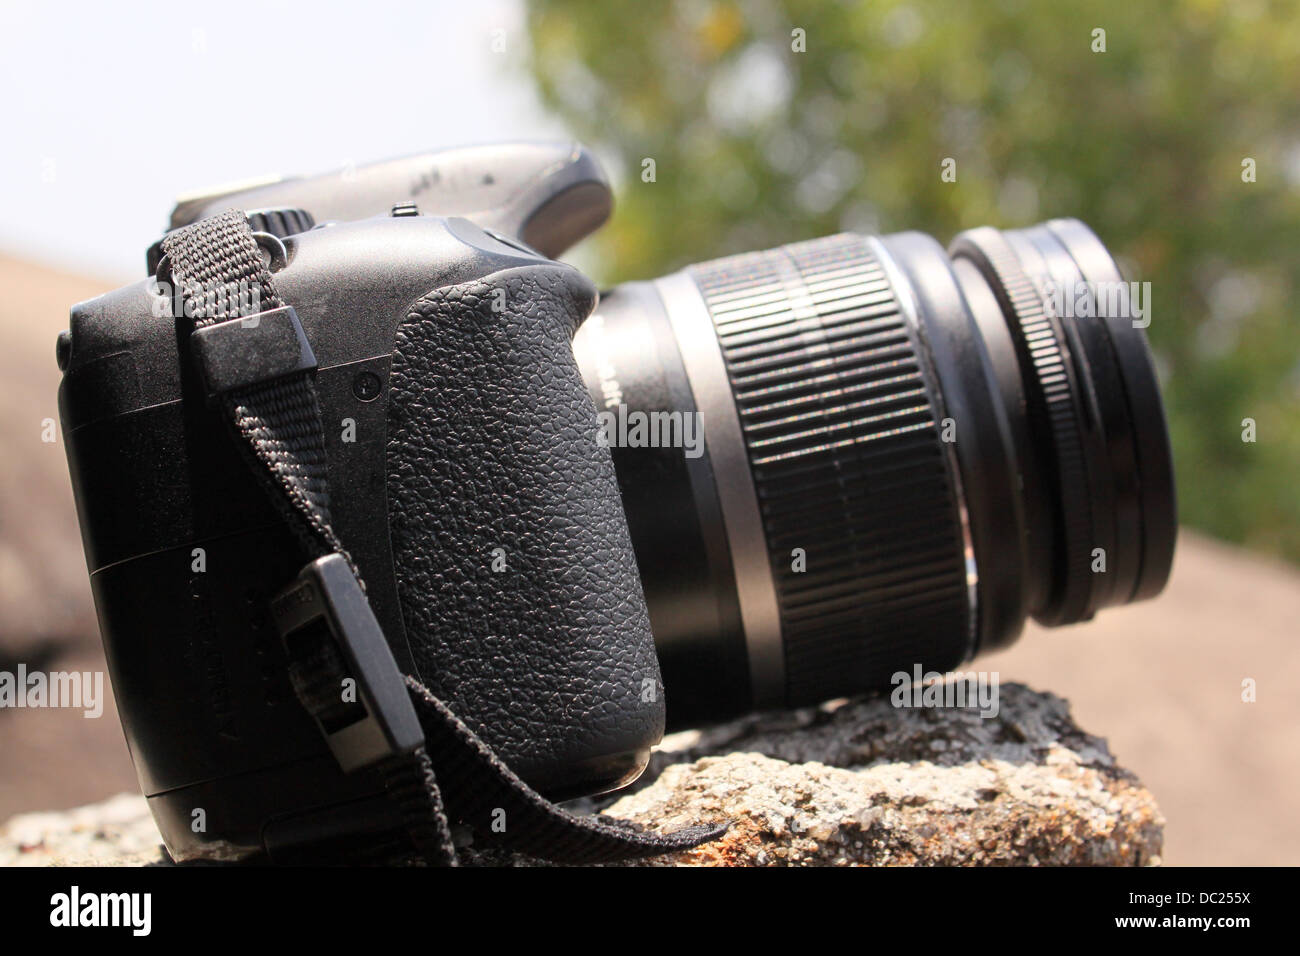 Canon EOS 550D o Rebel T2i telecamera collocata su una roccia Foto Stock